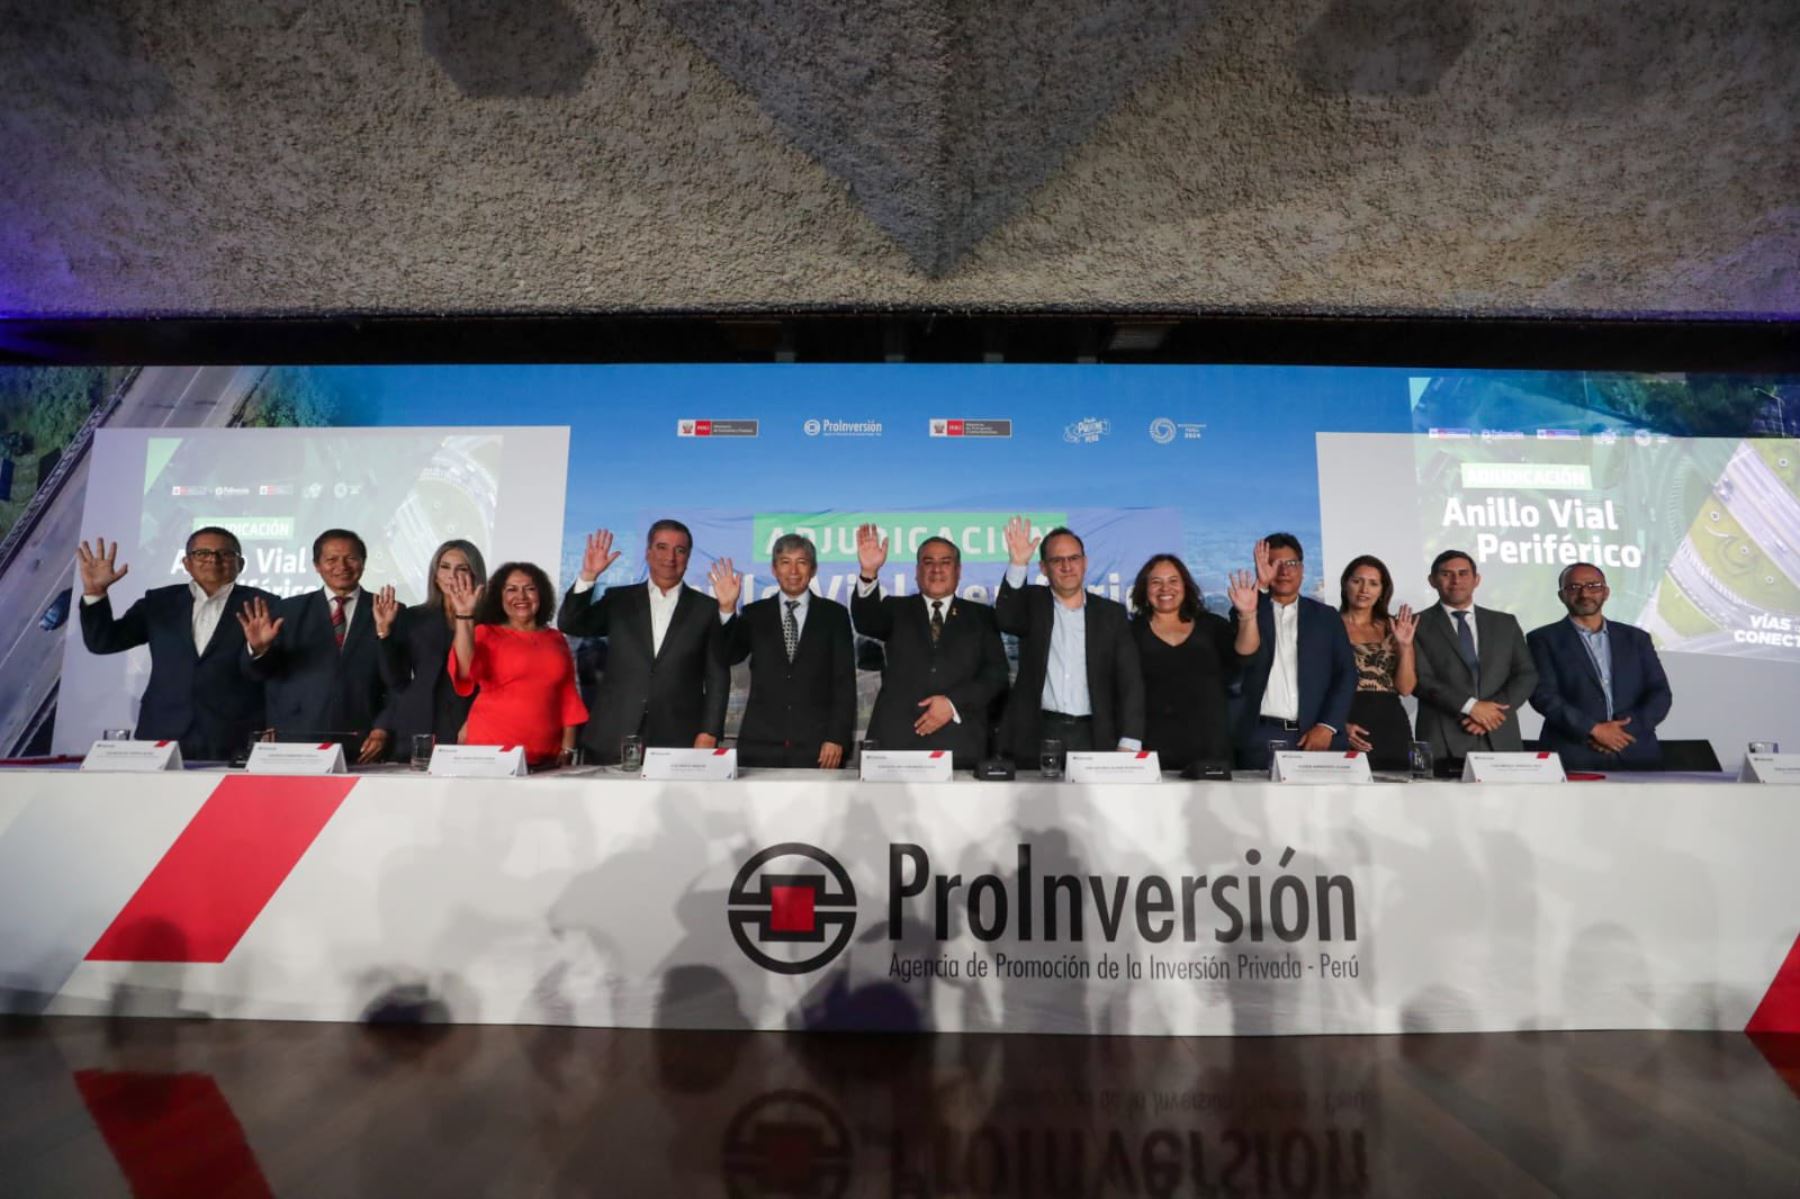 Adjudicación de Anillo Vial Periférico a consorcio español ratifica compromiso del Perú